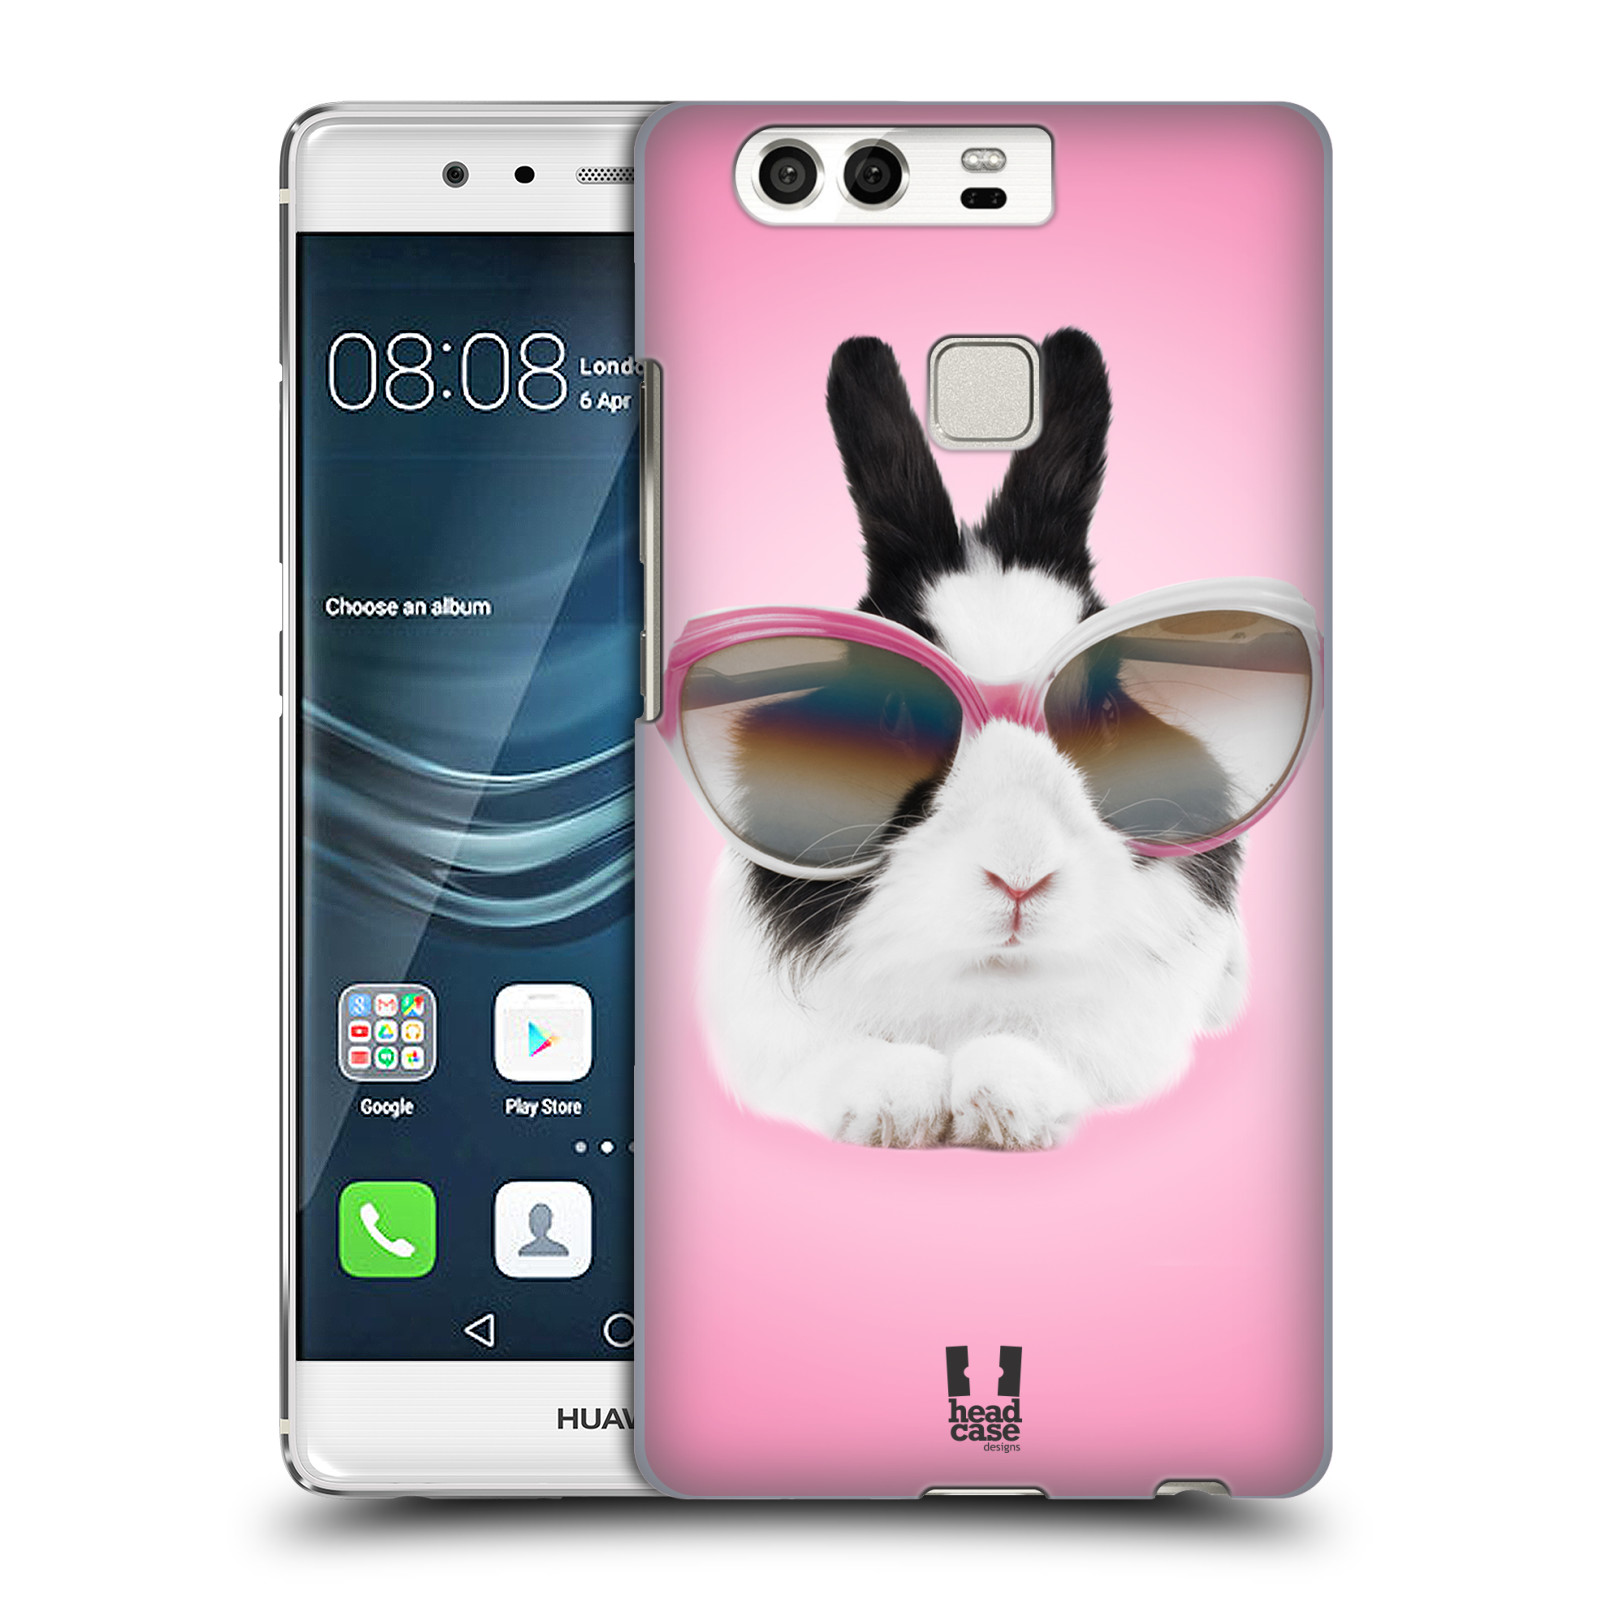 HEAD CASE plastový obal na mobil Huawei P9 / P9 DUAL SIM vzor Legrační zvířátka roztomilý králíček s brýlemi růžová